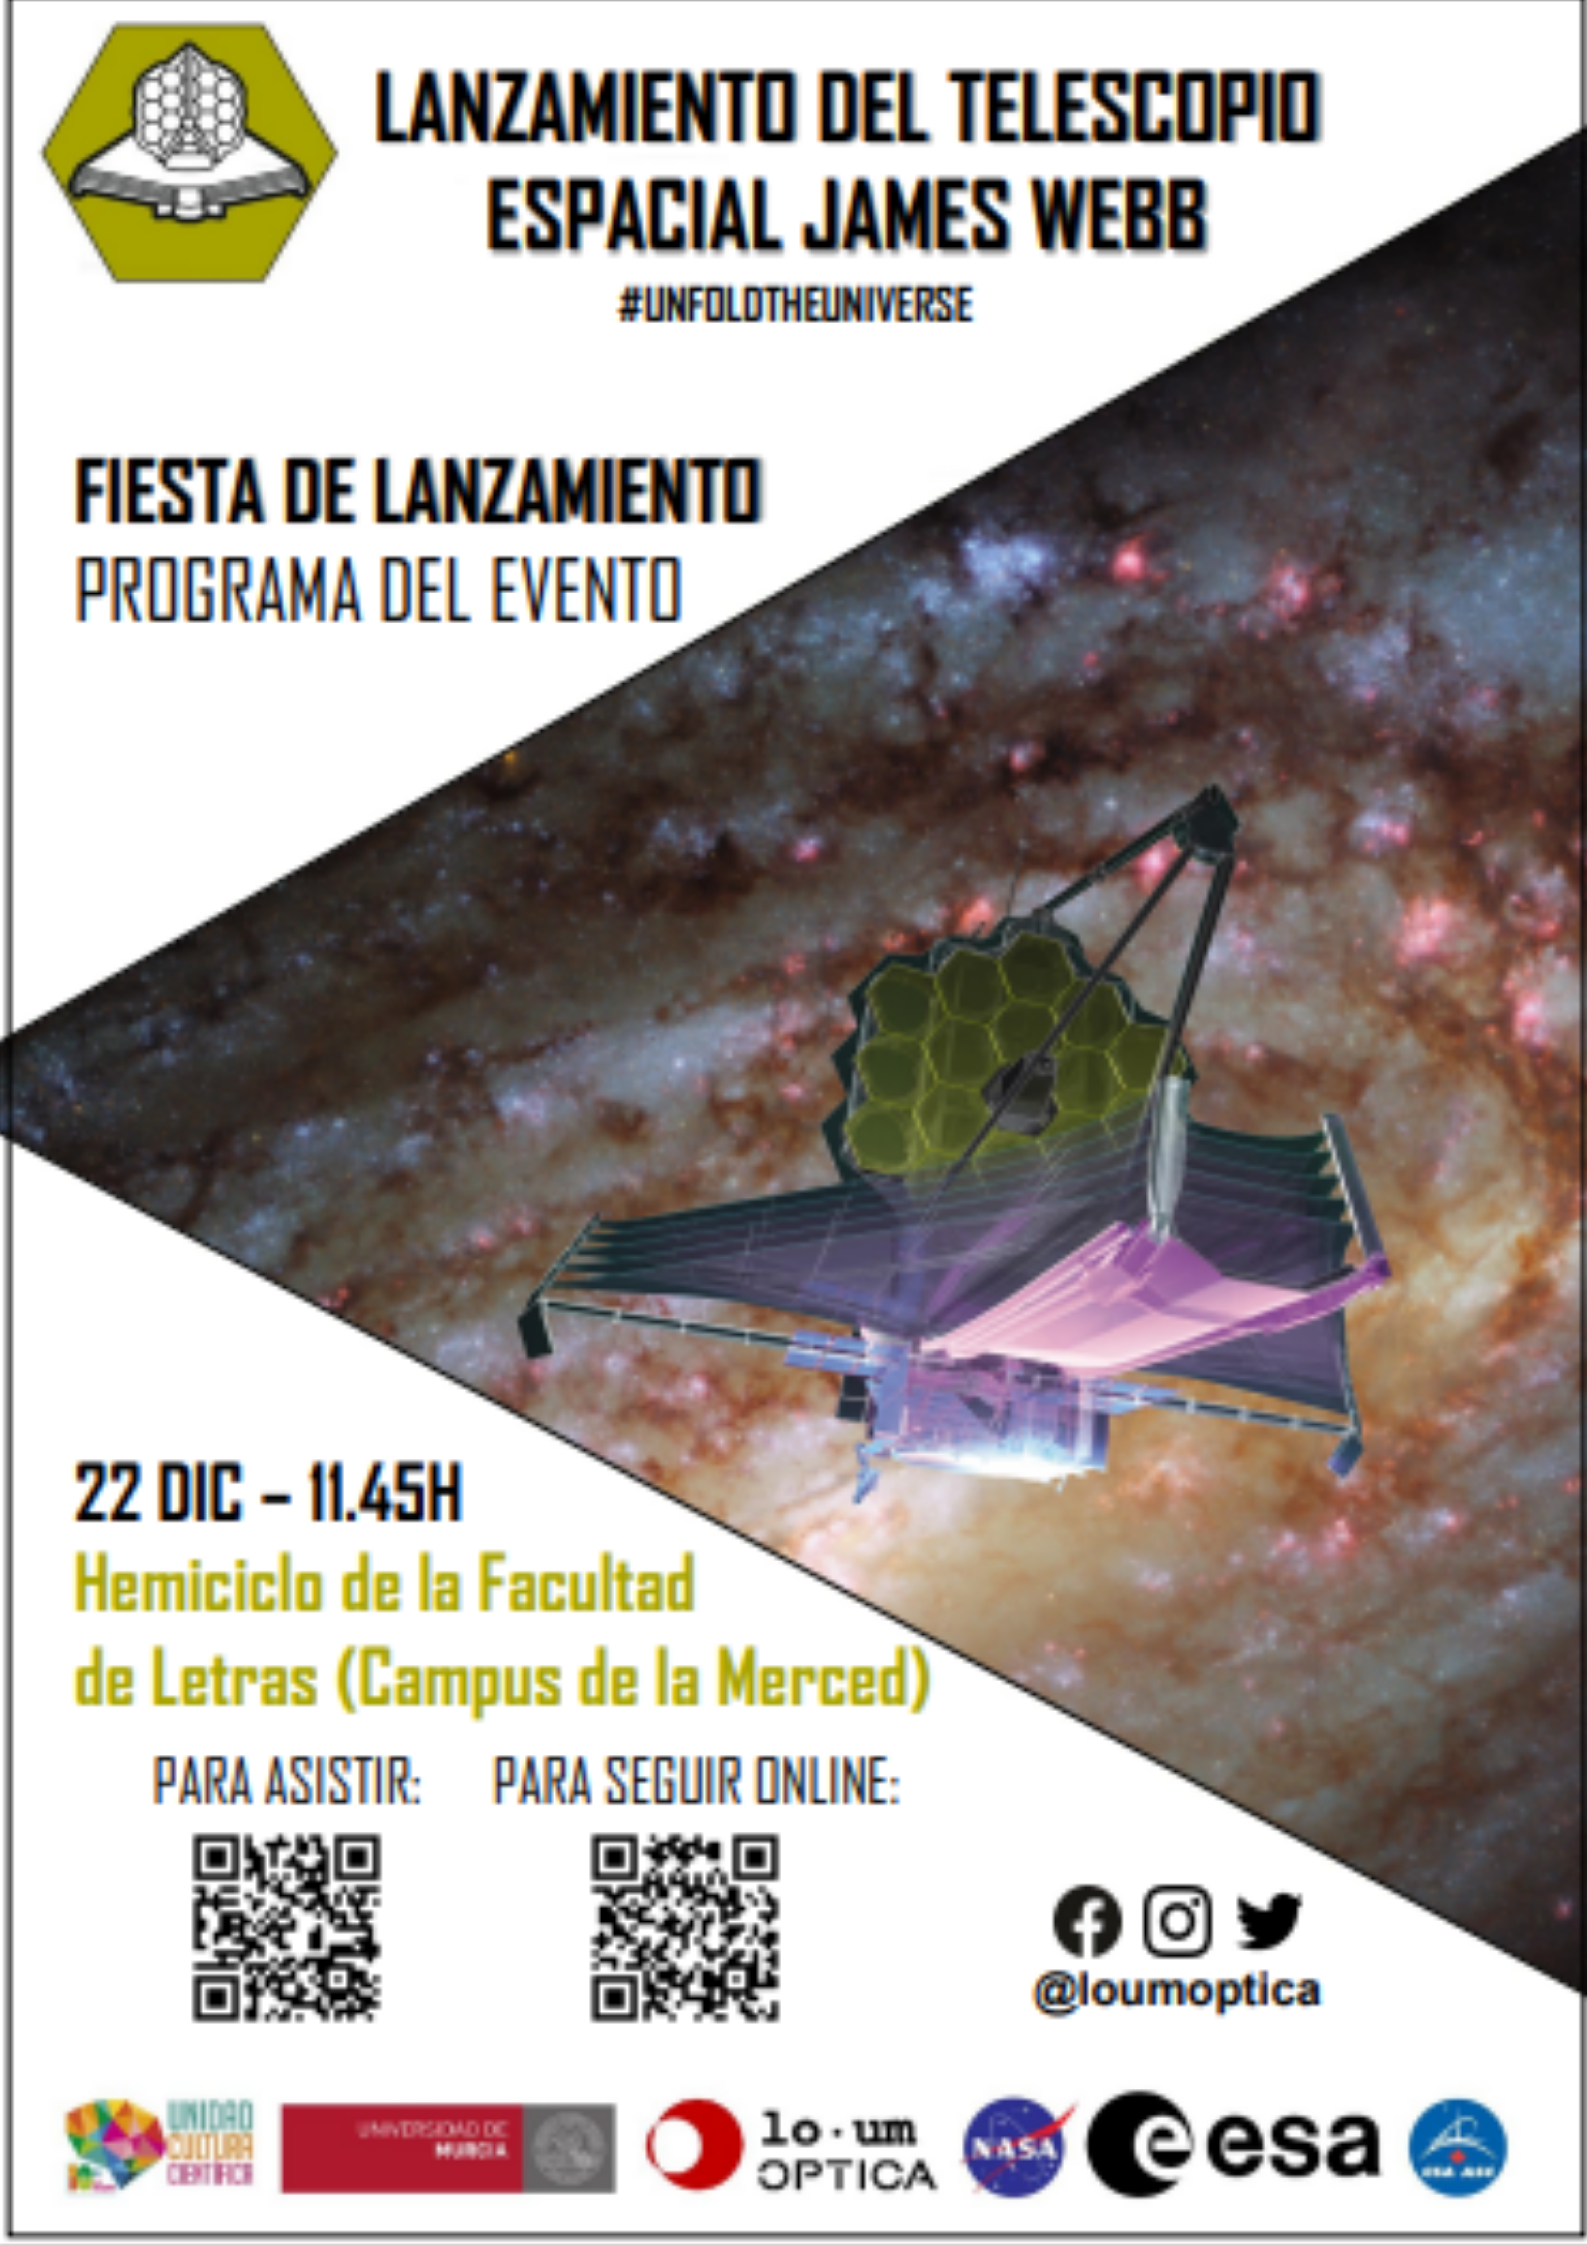 El LOUM OPTICA Chapter de la UMU organiza una jornada muy “espacial” con motivo del lanzamiento del telescopio James Webb